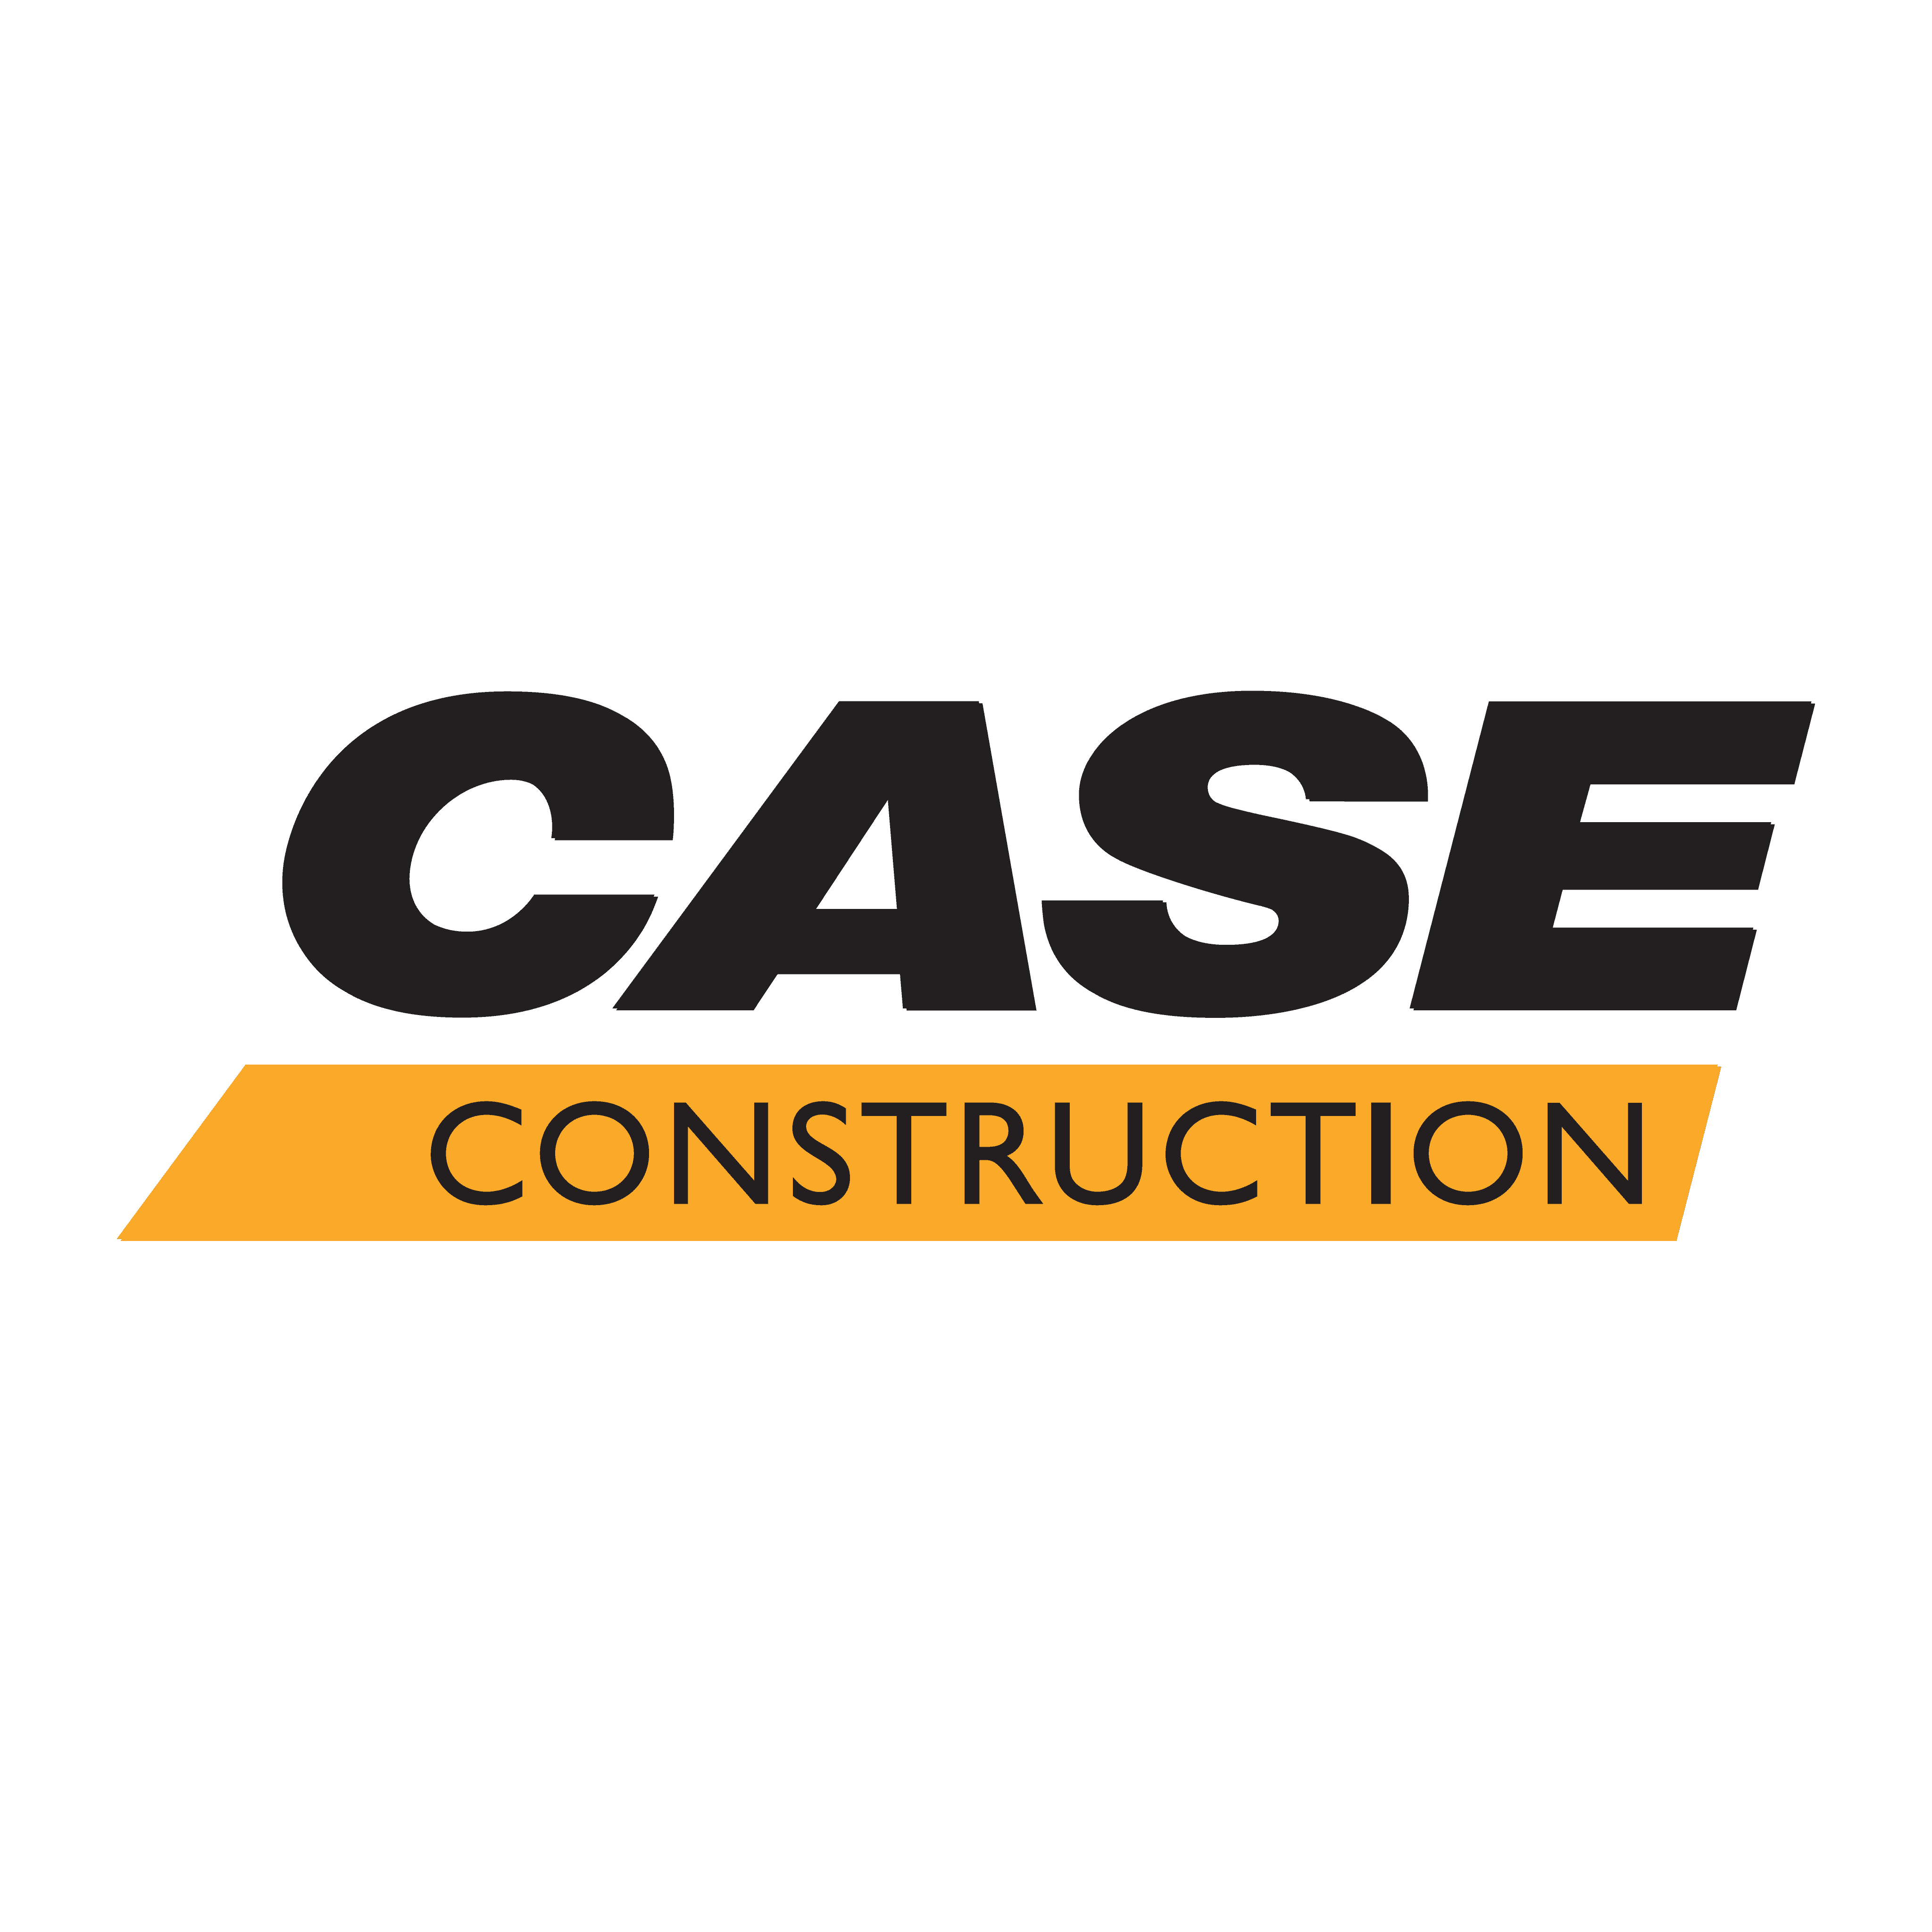 brasão case construction equipment